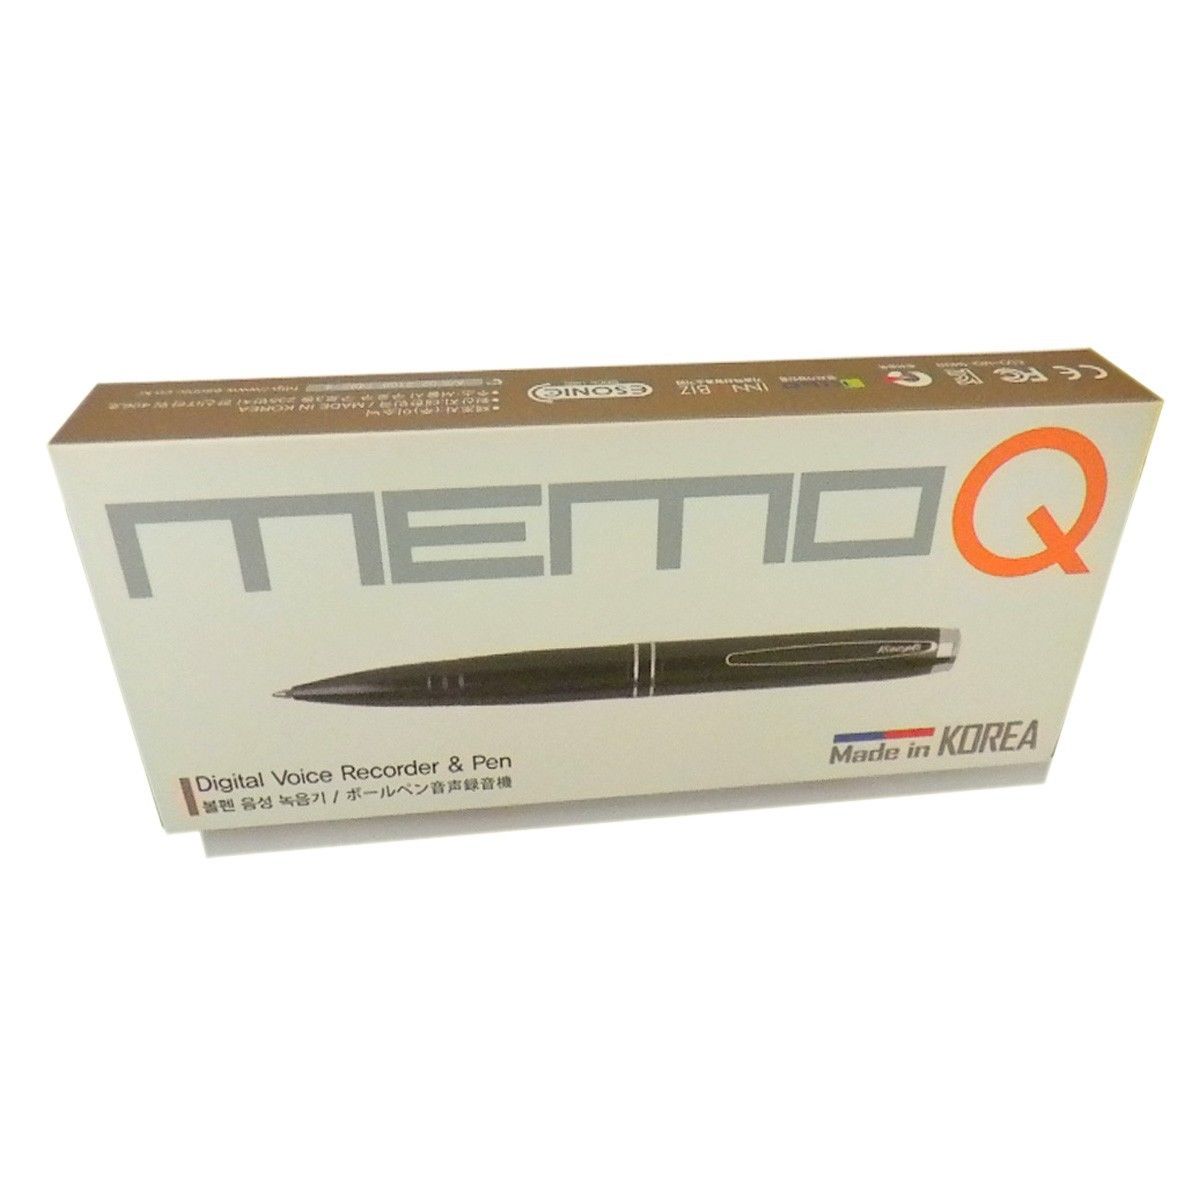 MEMO-Q MP4 8 GB Pen Camcorder Colors Video Recorder